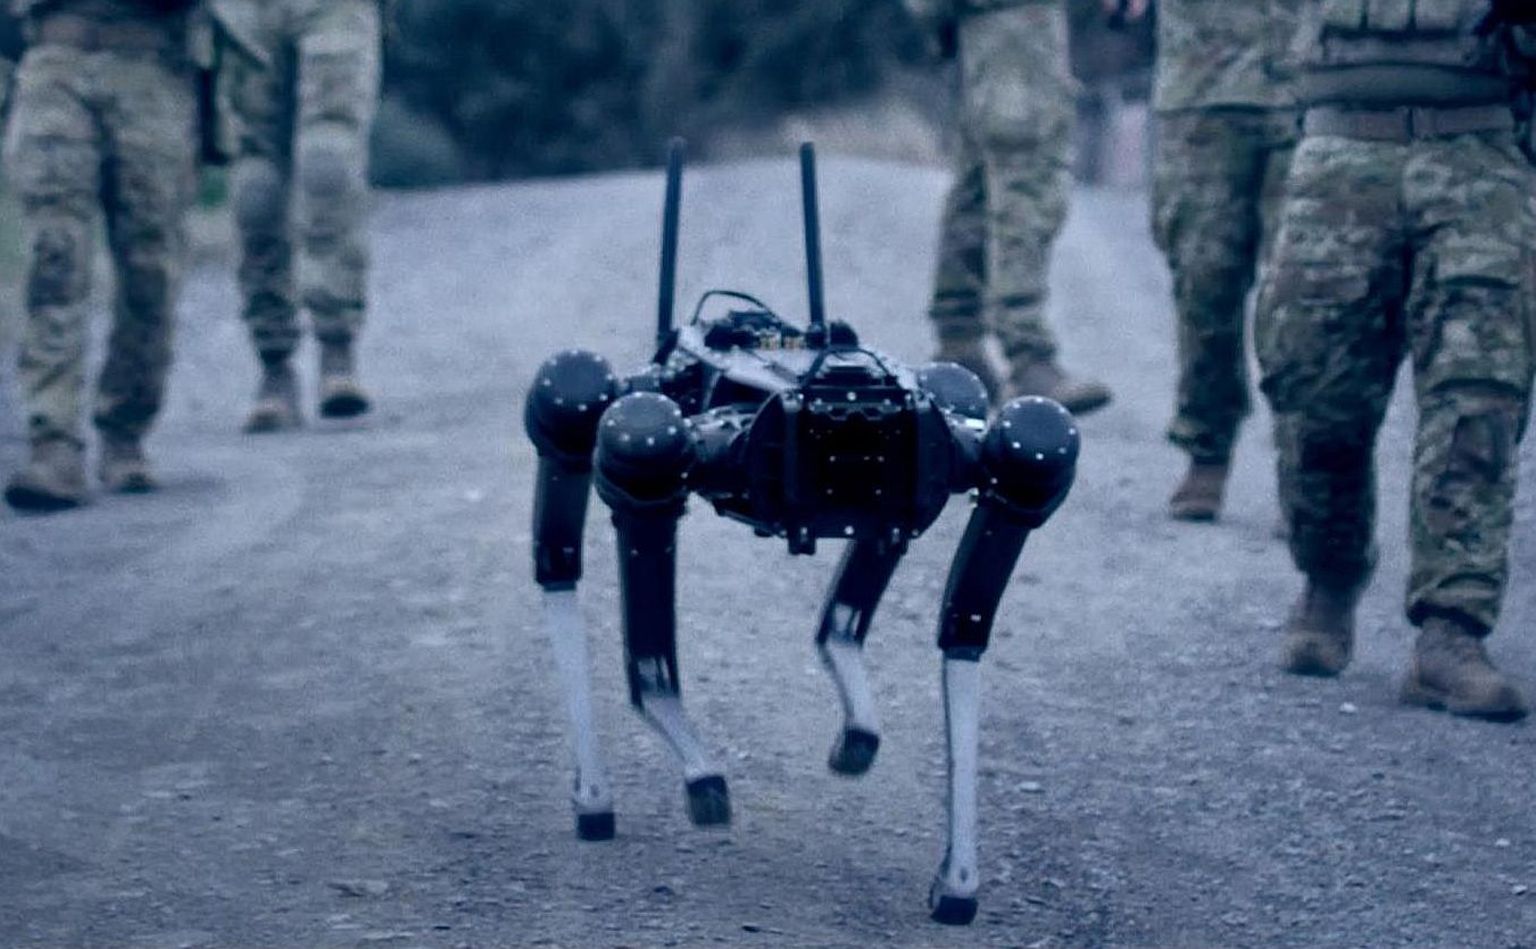 Viis jalaväelast ja robotkoer: eemalt vaadates tundub neljajalgne masin askeldavat isepäi, kuid tegelikult on see ühenduses ühe sõduriga, kes annab mõtte teel käsklusi.